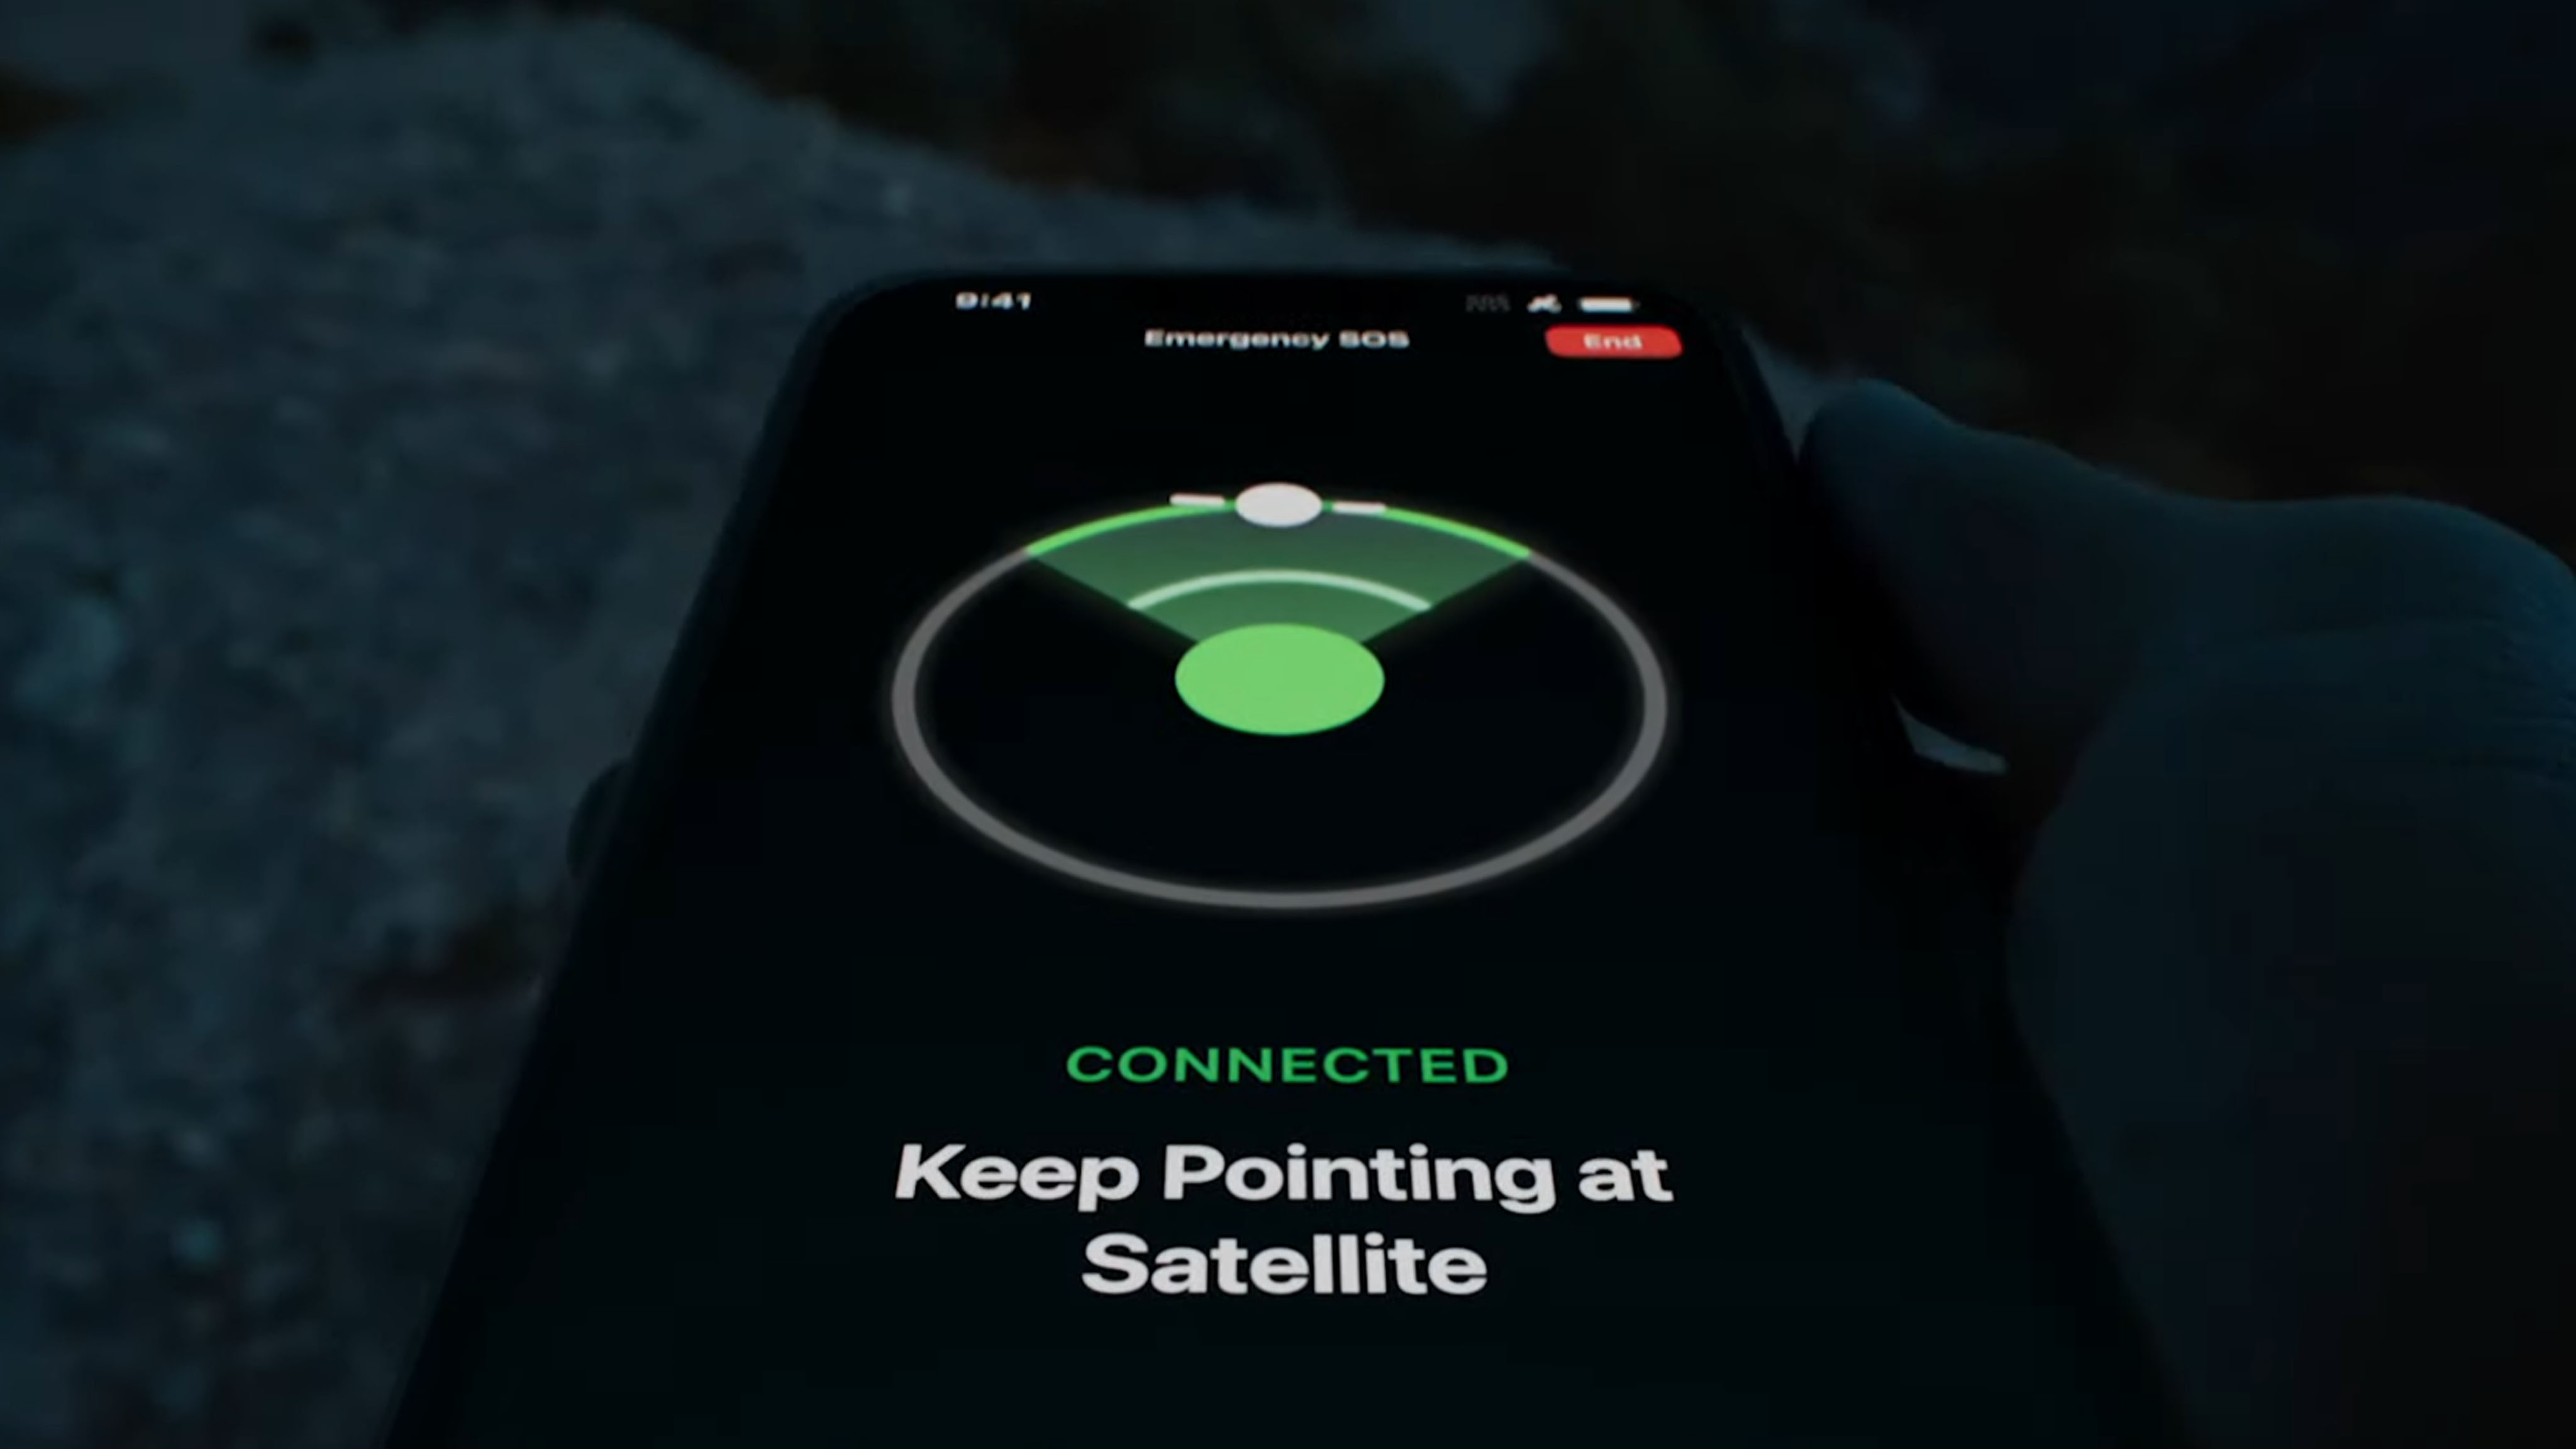 iPhone 14's Emergency SOS via satellite feature saves man stranded in Alaska